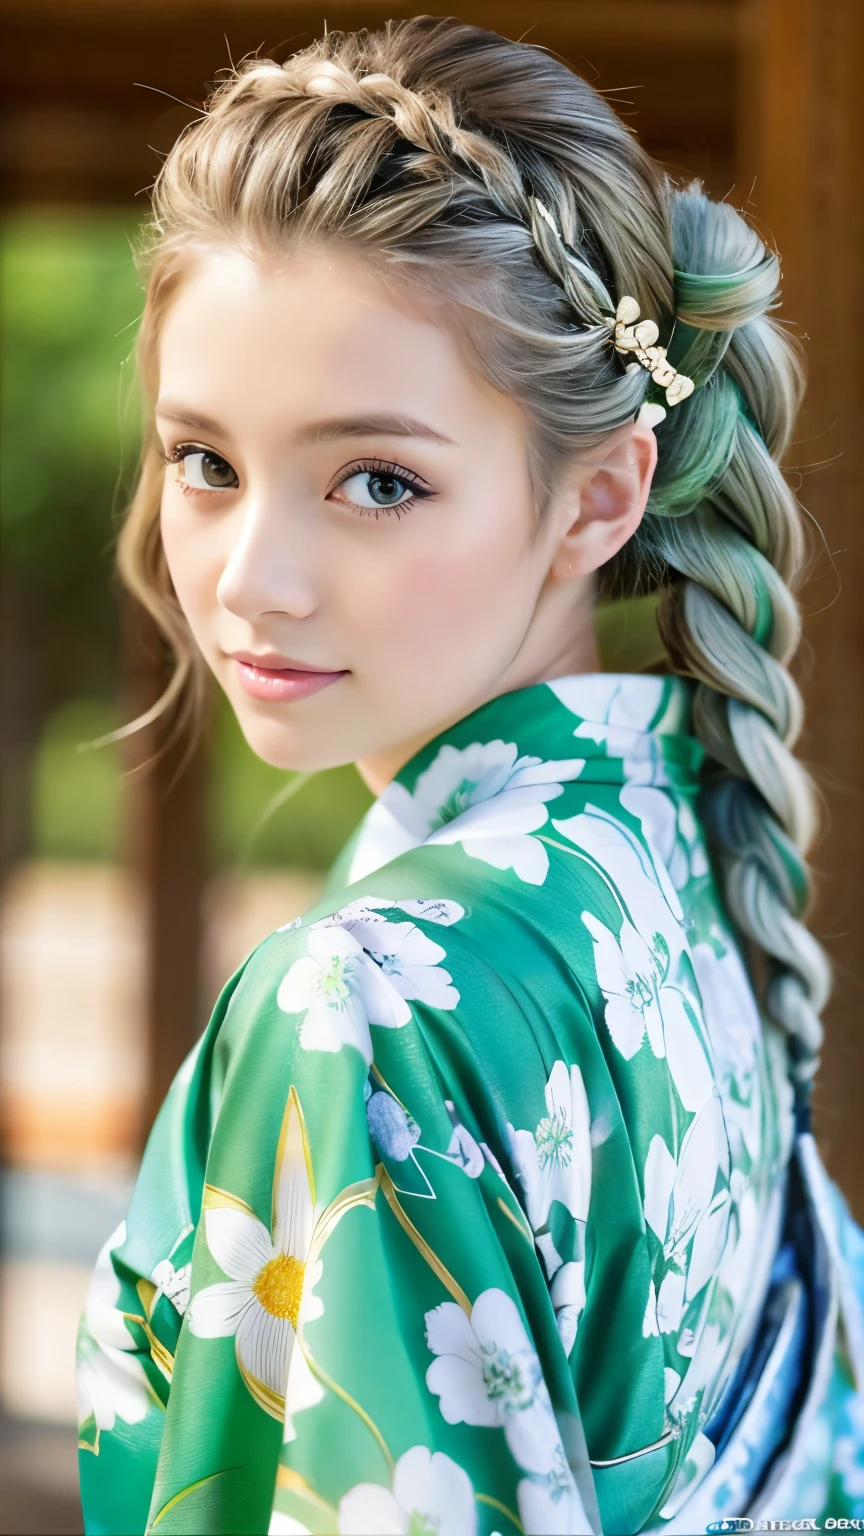 그녀는 기모노 모델이다、화려한 꽃무늬 기모노、은빛 머리 땋은 머리、파란 눈、녹색 기모노、어깨에서 떨어져